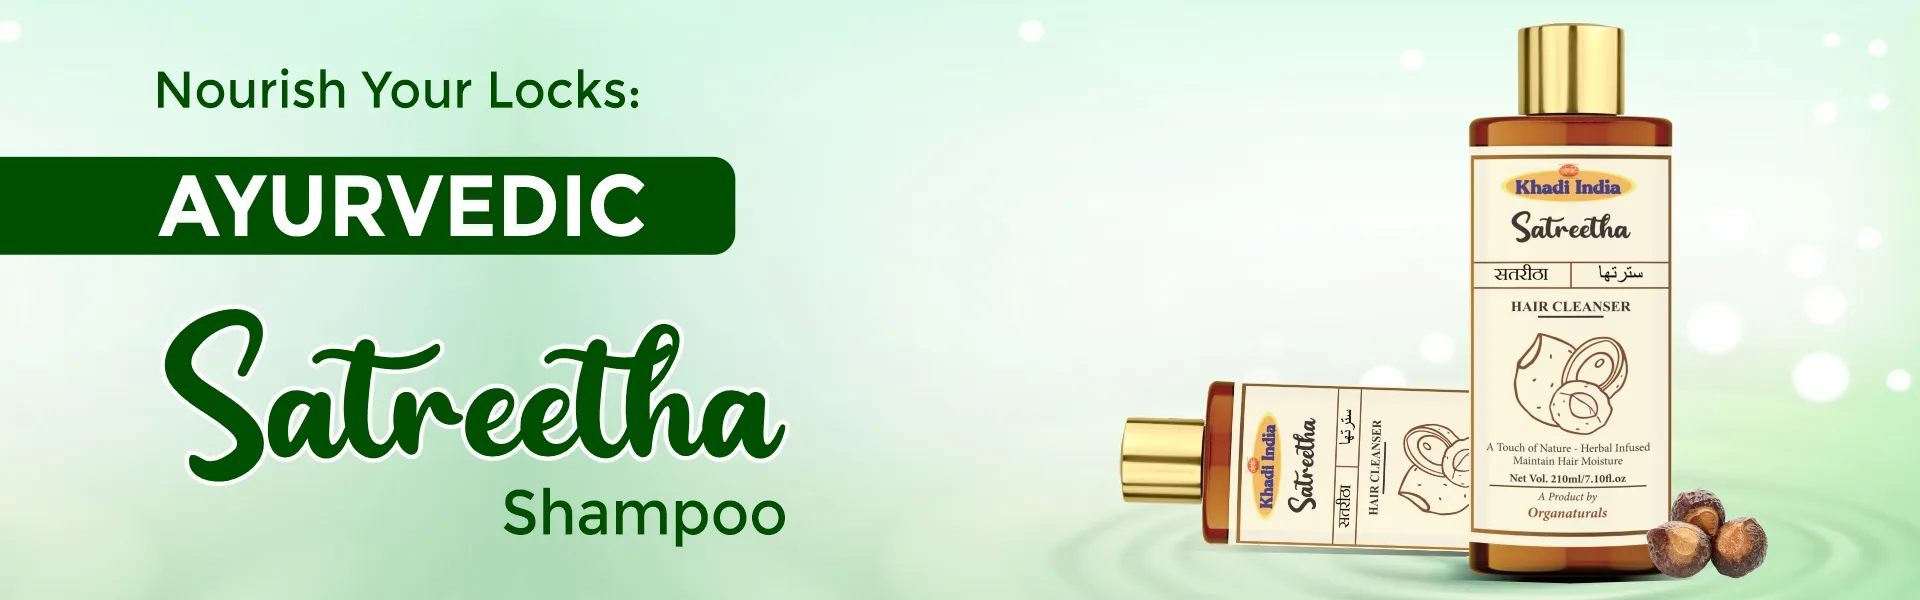 Satreetha shampoo - www.dkihenna.com